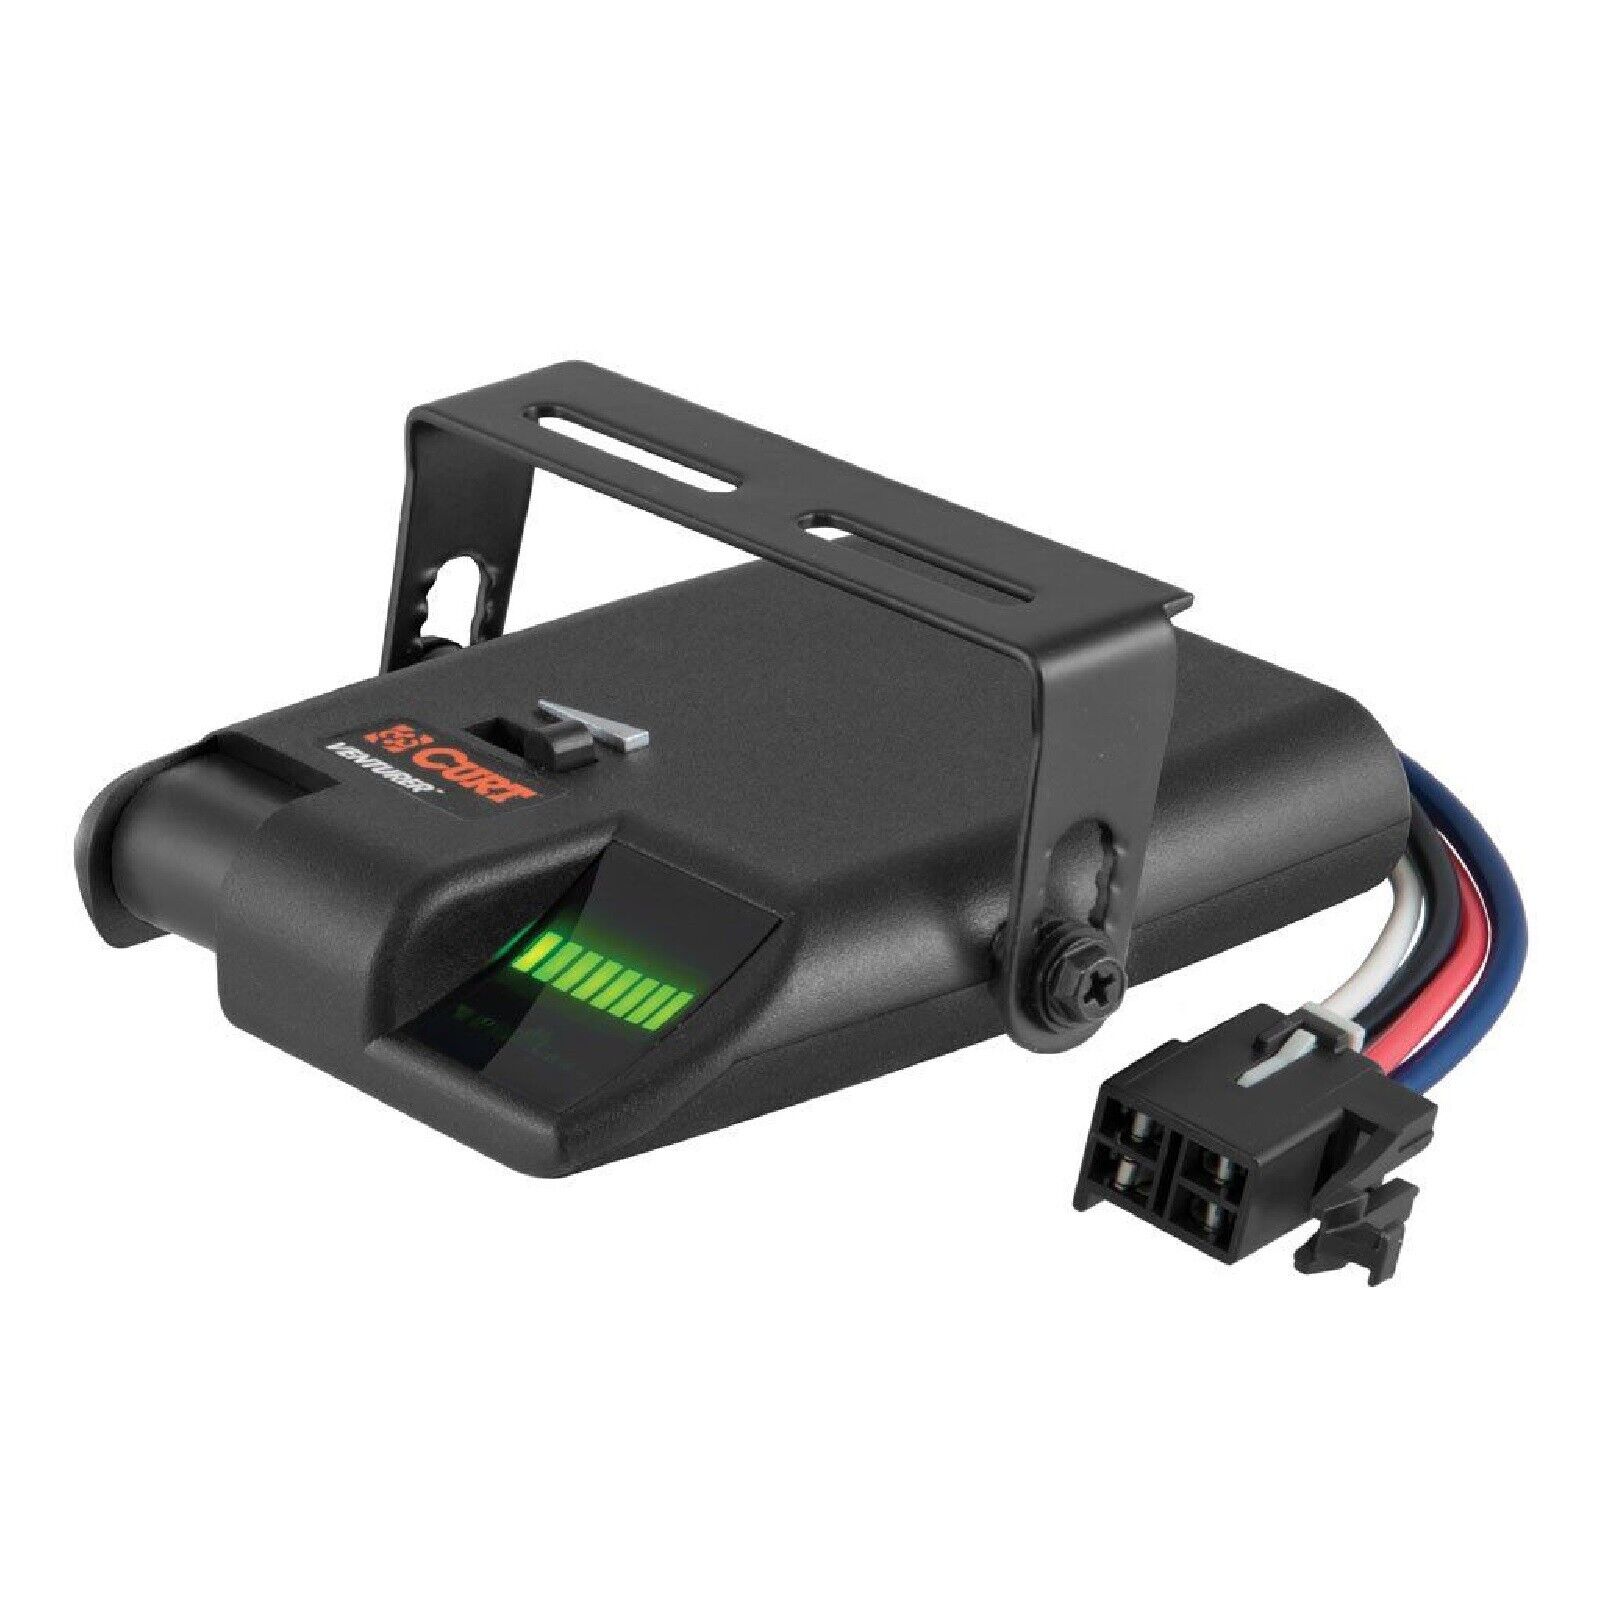 Curt 51110 Venturer Electric Trailer Brake Controller w/ Time Based Activation